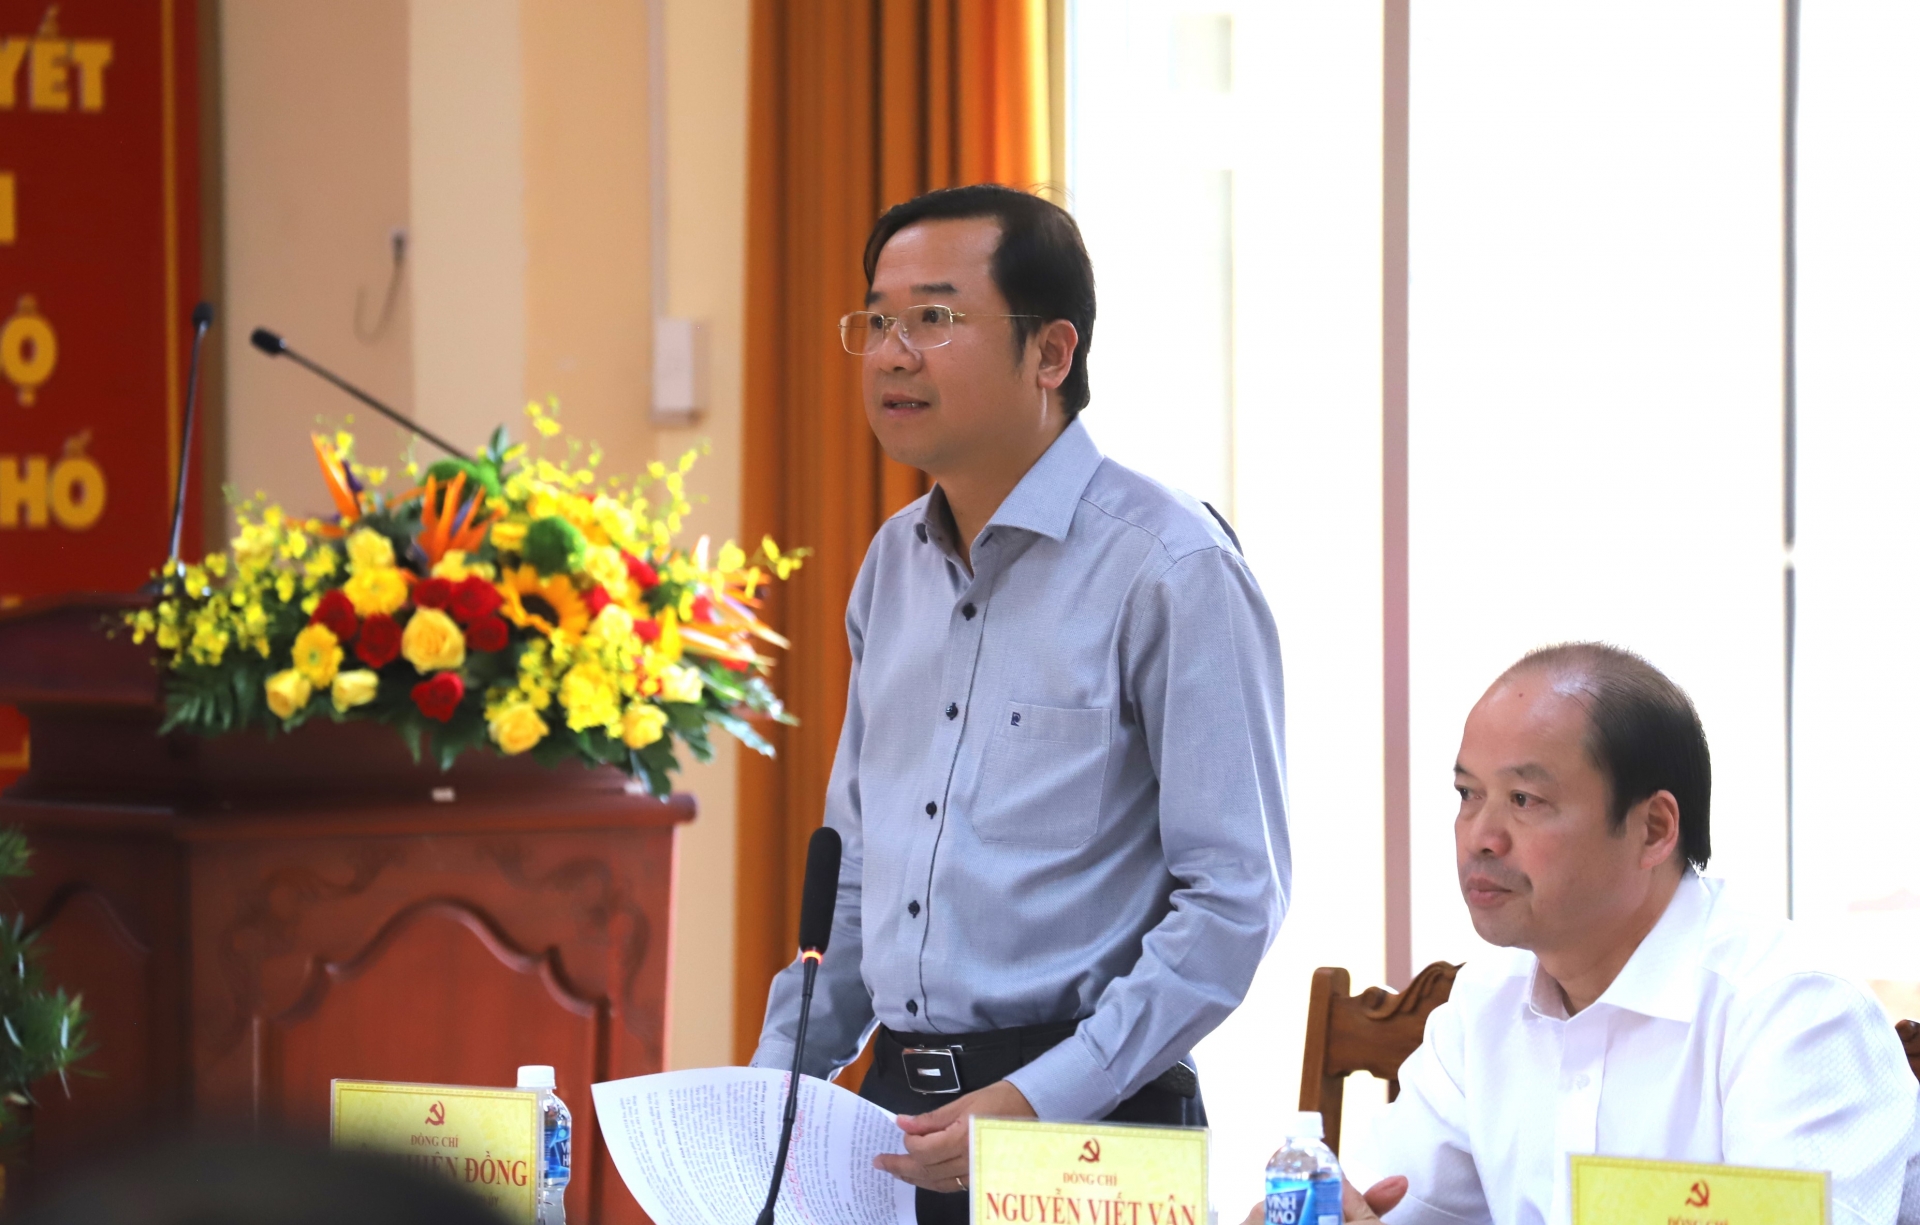 Đồng chí Tôn Thiện Đồng - Ủy viên Ban Thường vụ Tỉnh ủy, Bí thư Thành ủy Bảo Lộc báo cáo tại hội nghị